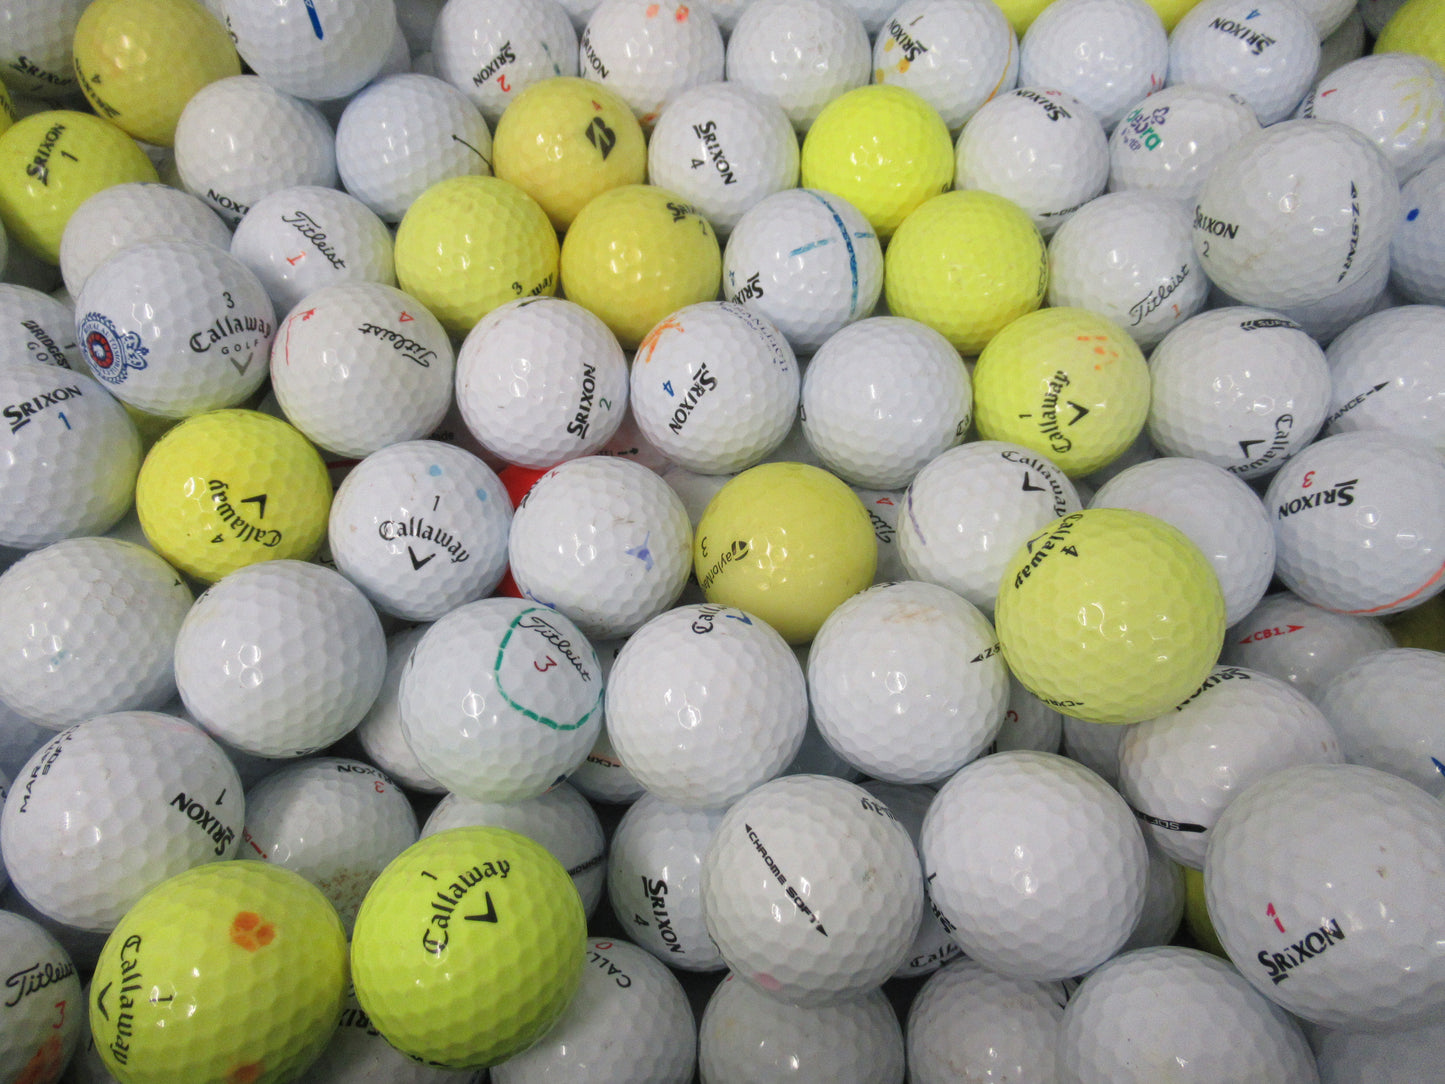 Wholesale 300 a/b grade mixed premium golf balls